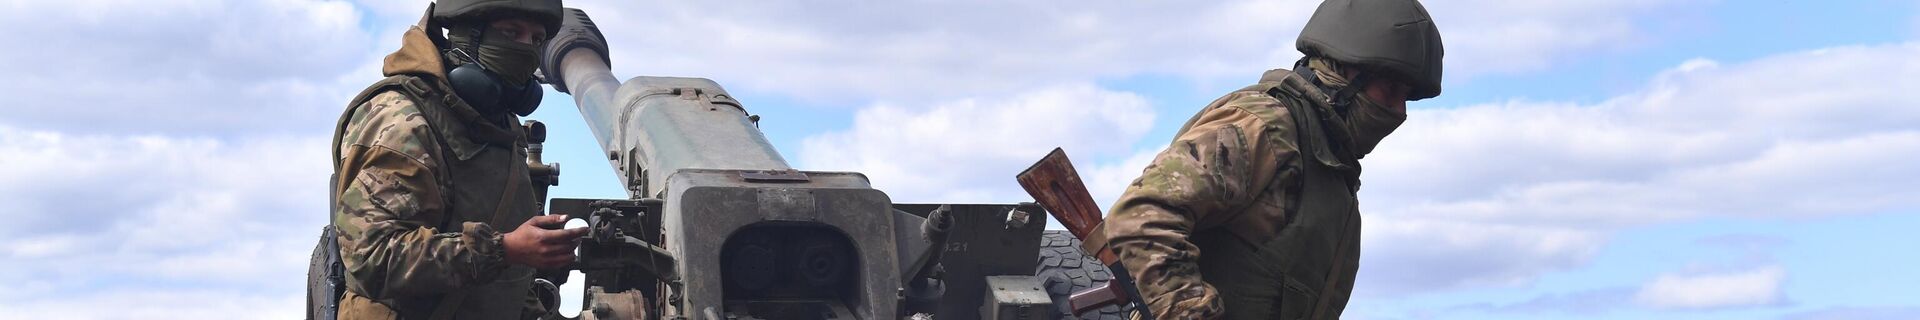 Работа артиллерийского расчета ЧВК Вагнер под Бахмутом в ДНР - Sputnik Кыргызстан, 1920, 24.02.2022